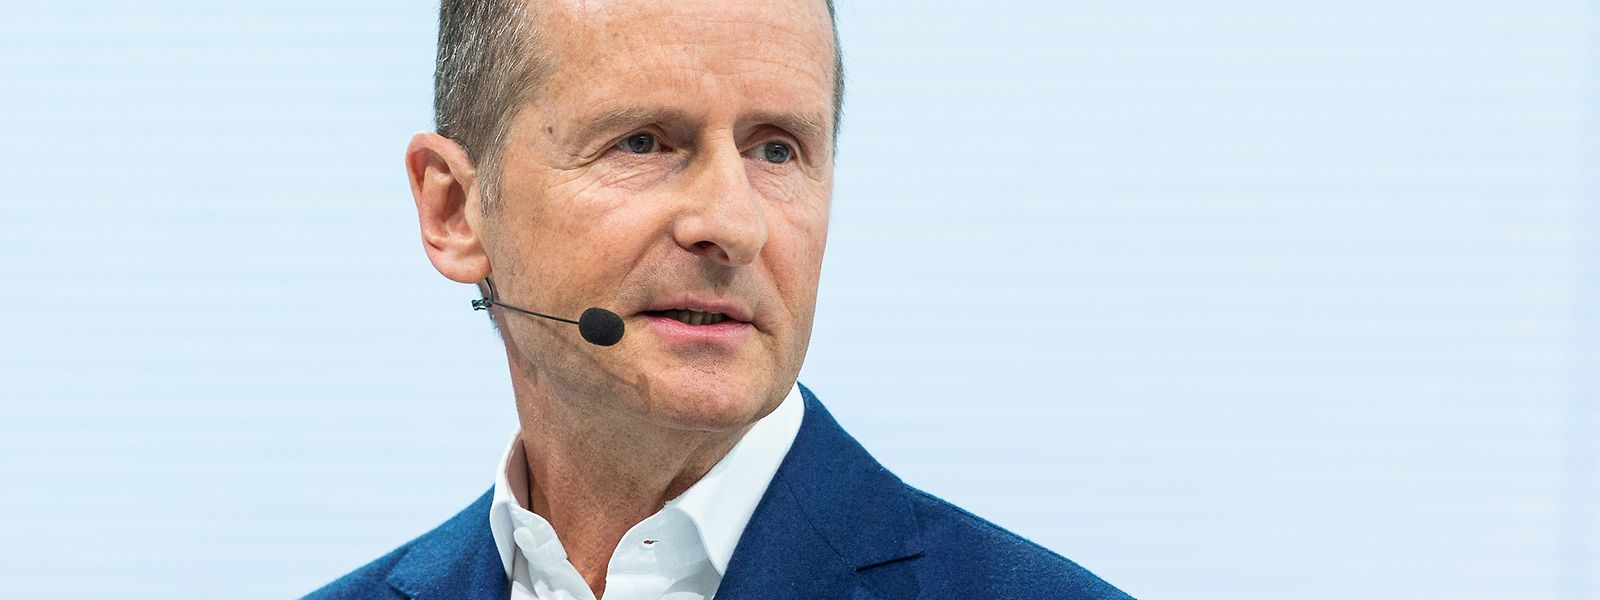 Herbert Diess, Vorstandsvorsitzender der Volkswagen AG, bei der Jahrespressekonferenz der Volkswagen AG.